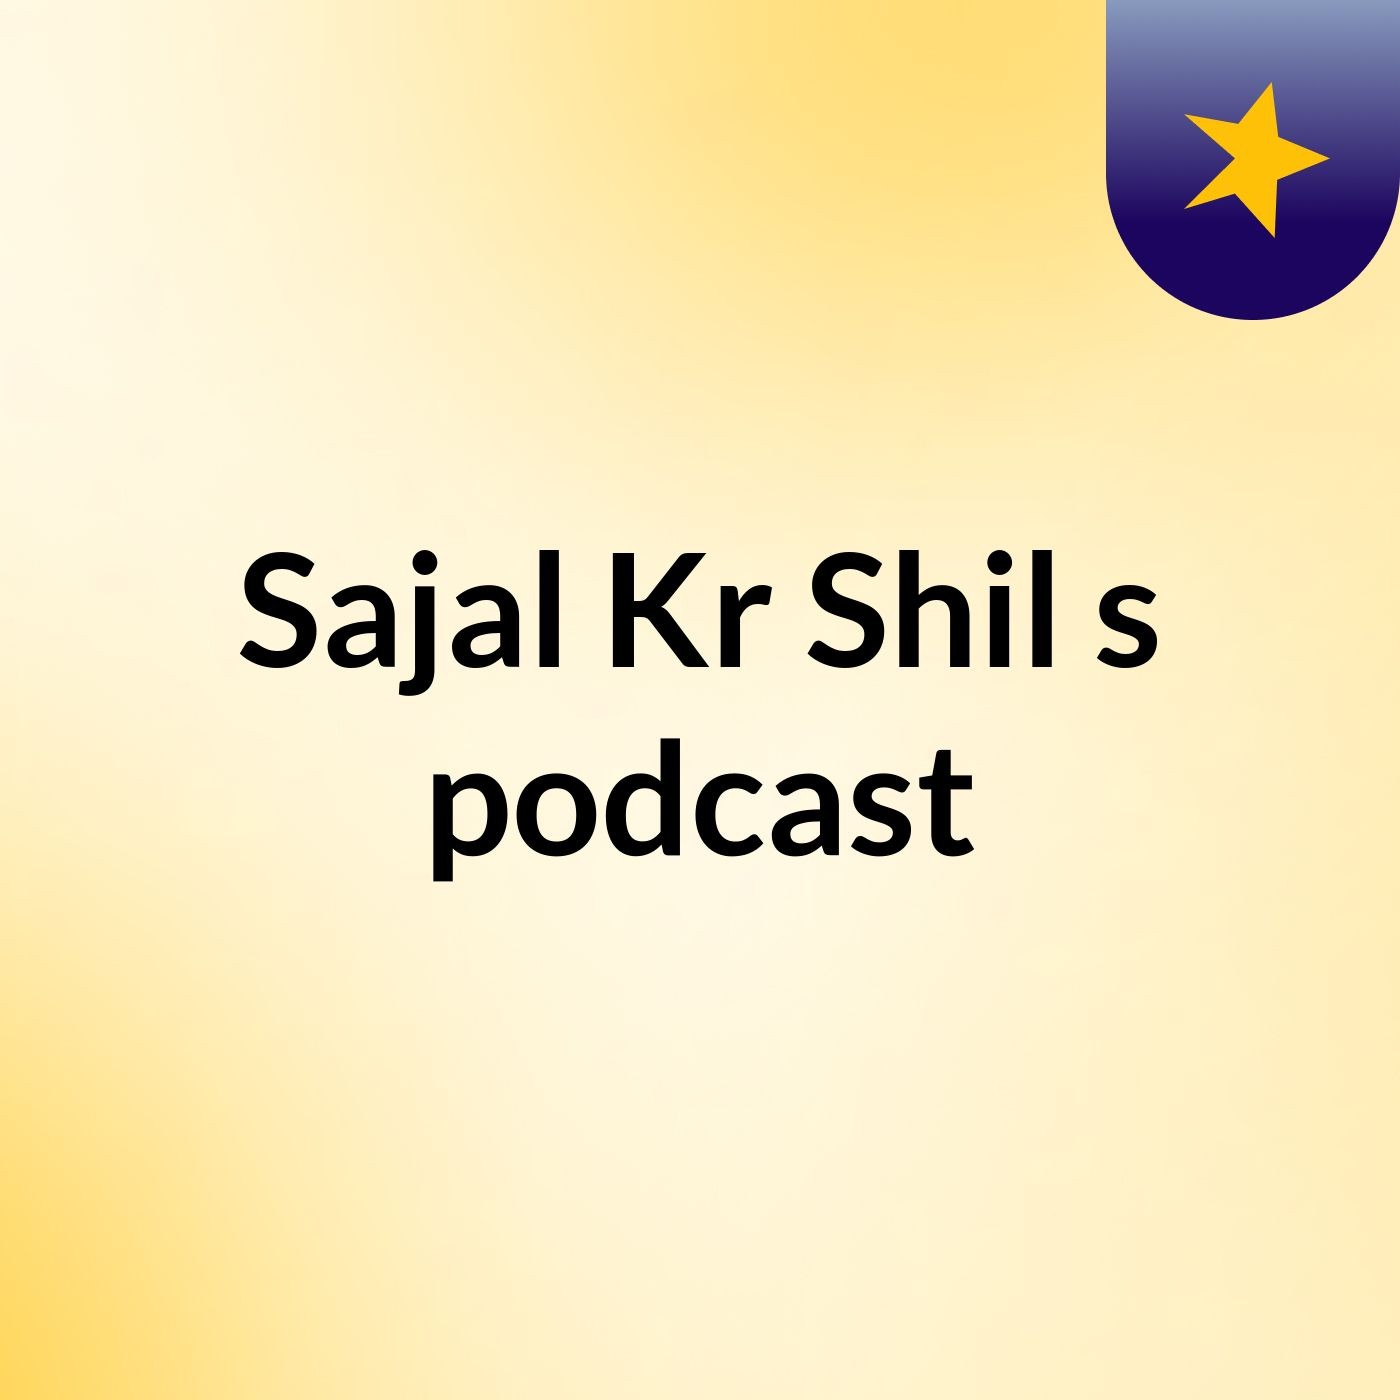 Sajal Kr Shil's podcast